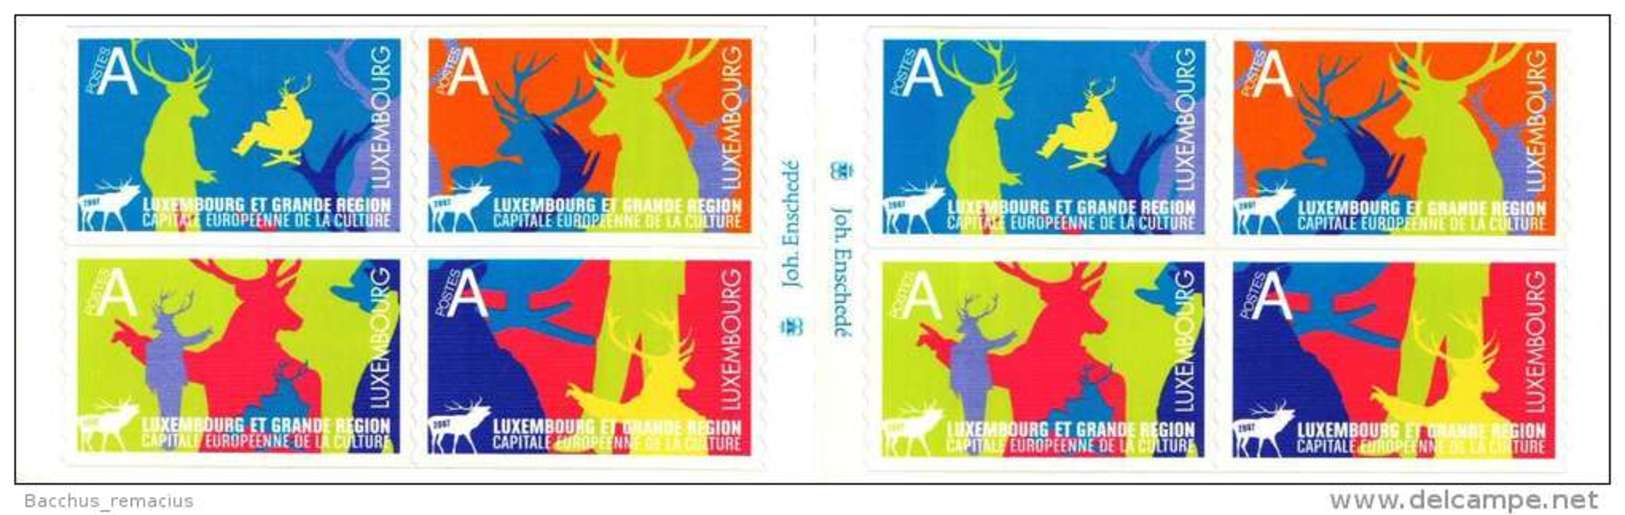 Luxembourg Et Grande Région  Carnet De 8 Timbres "A"  Autocollants Capitale Européenne De La Culture 2007 - Postzegelboekjes